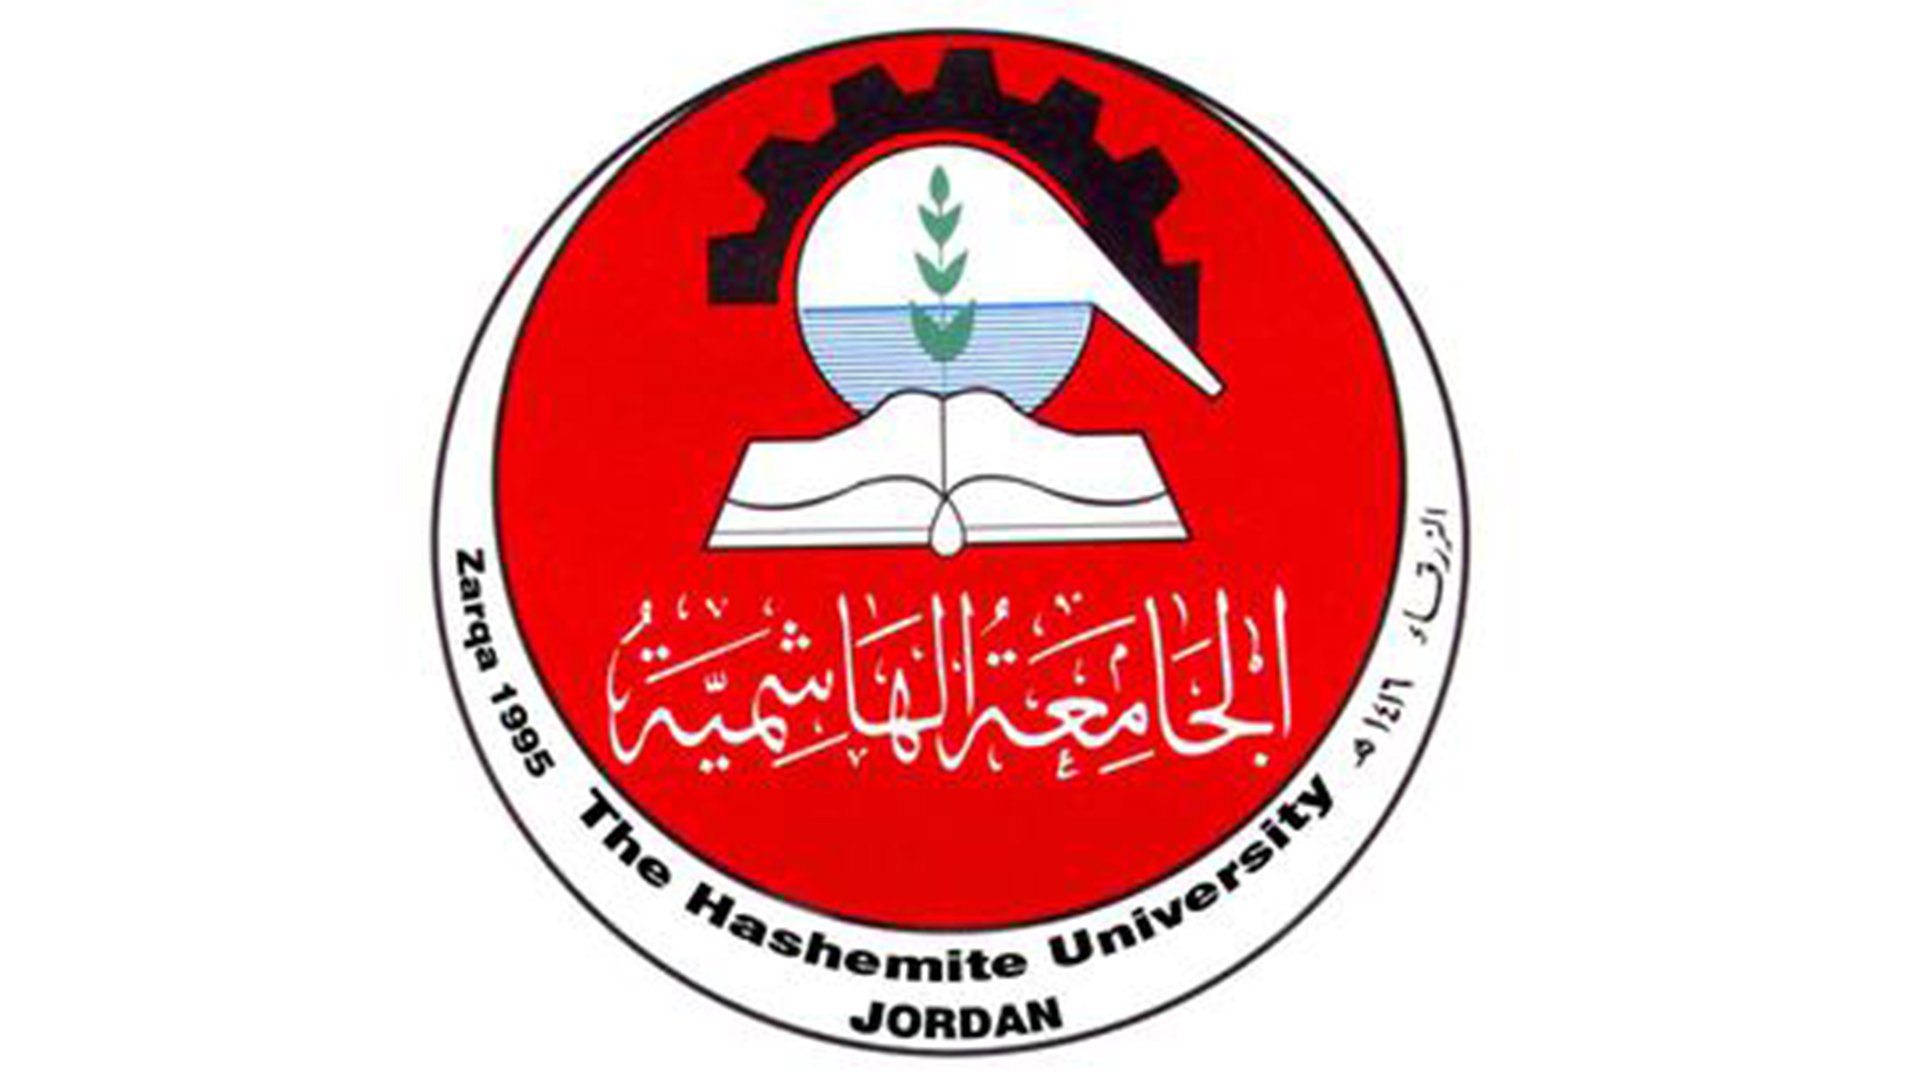 The Hashemite University